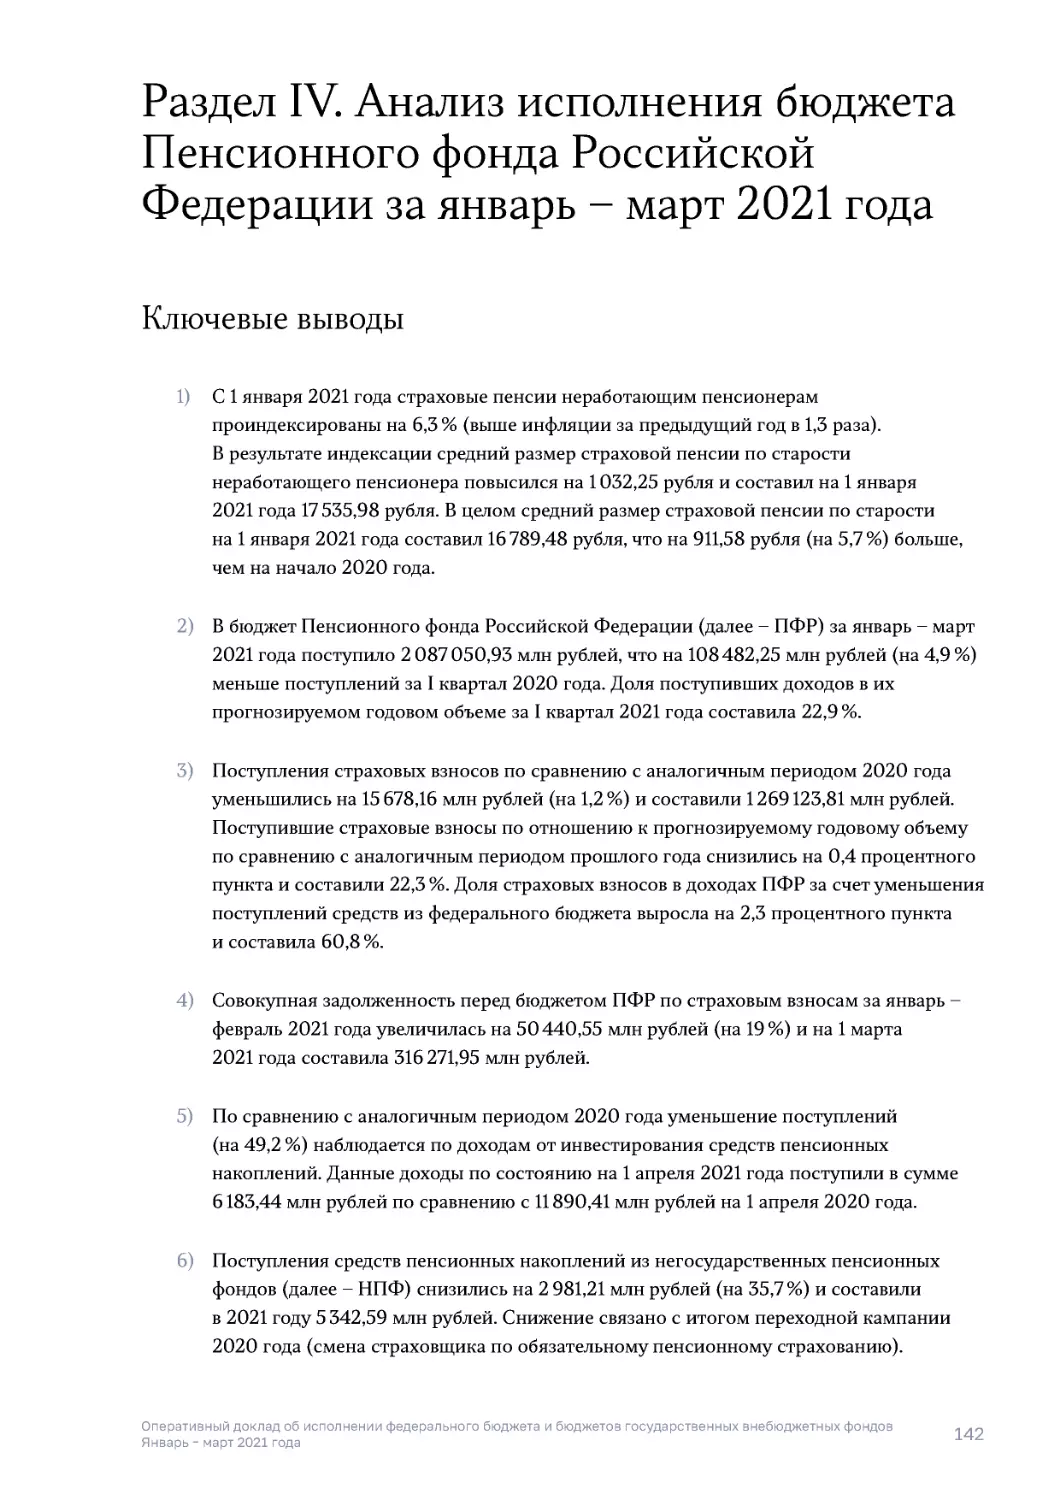 Раздел IV. Анализ исполнения бюджета Пенсионного фонда Российской Федерации за январь – март 2021 года